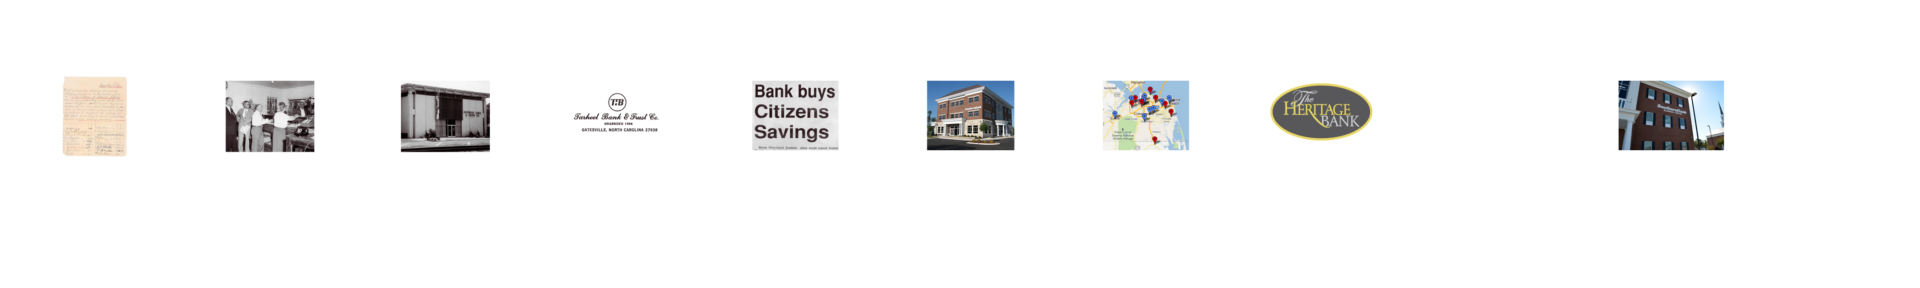 Southern Bank timeline photo